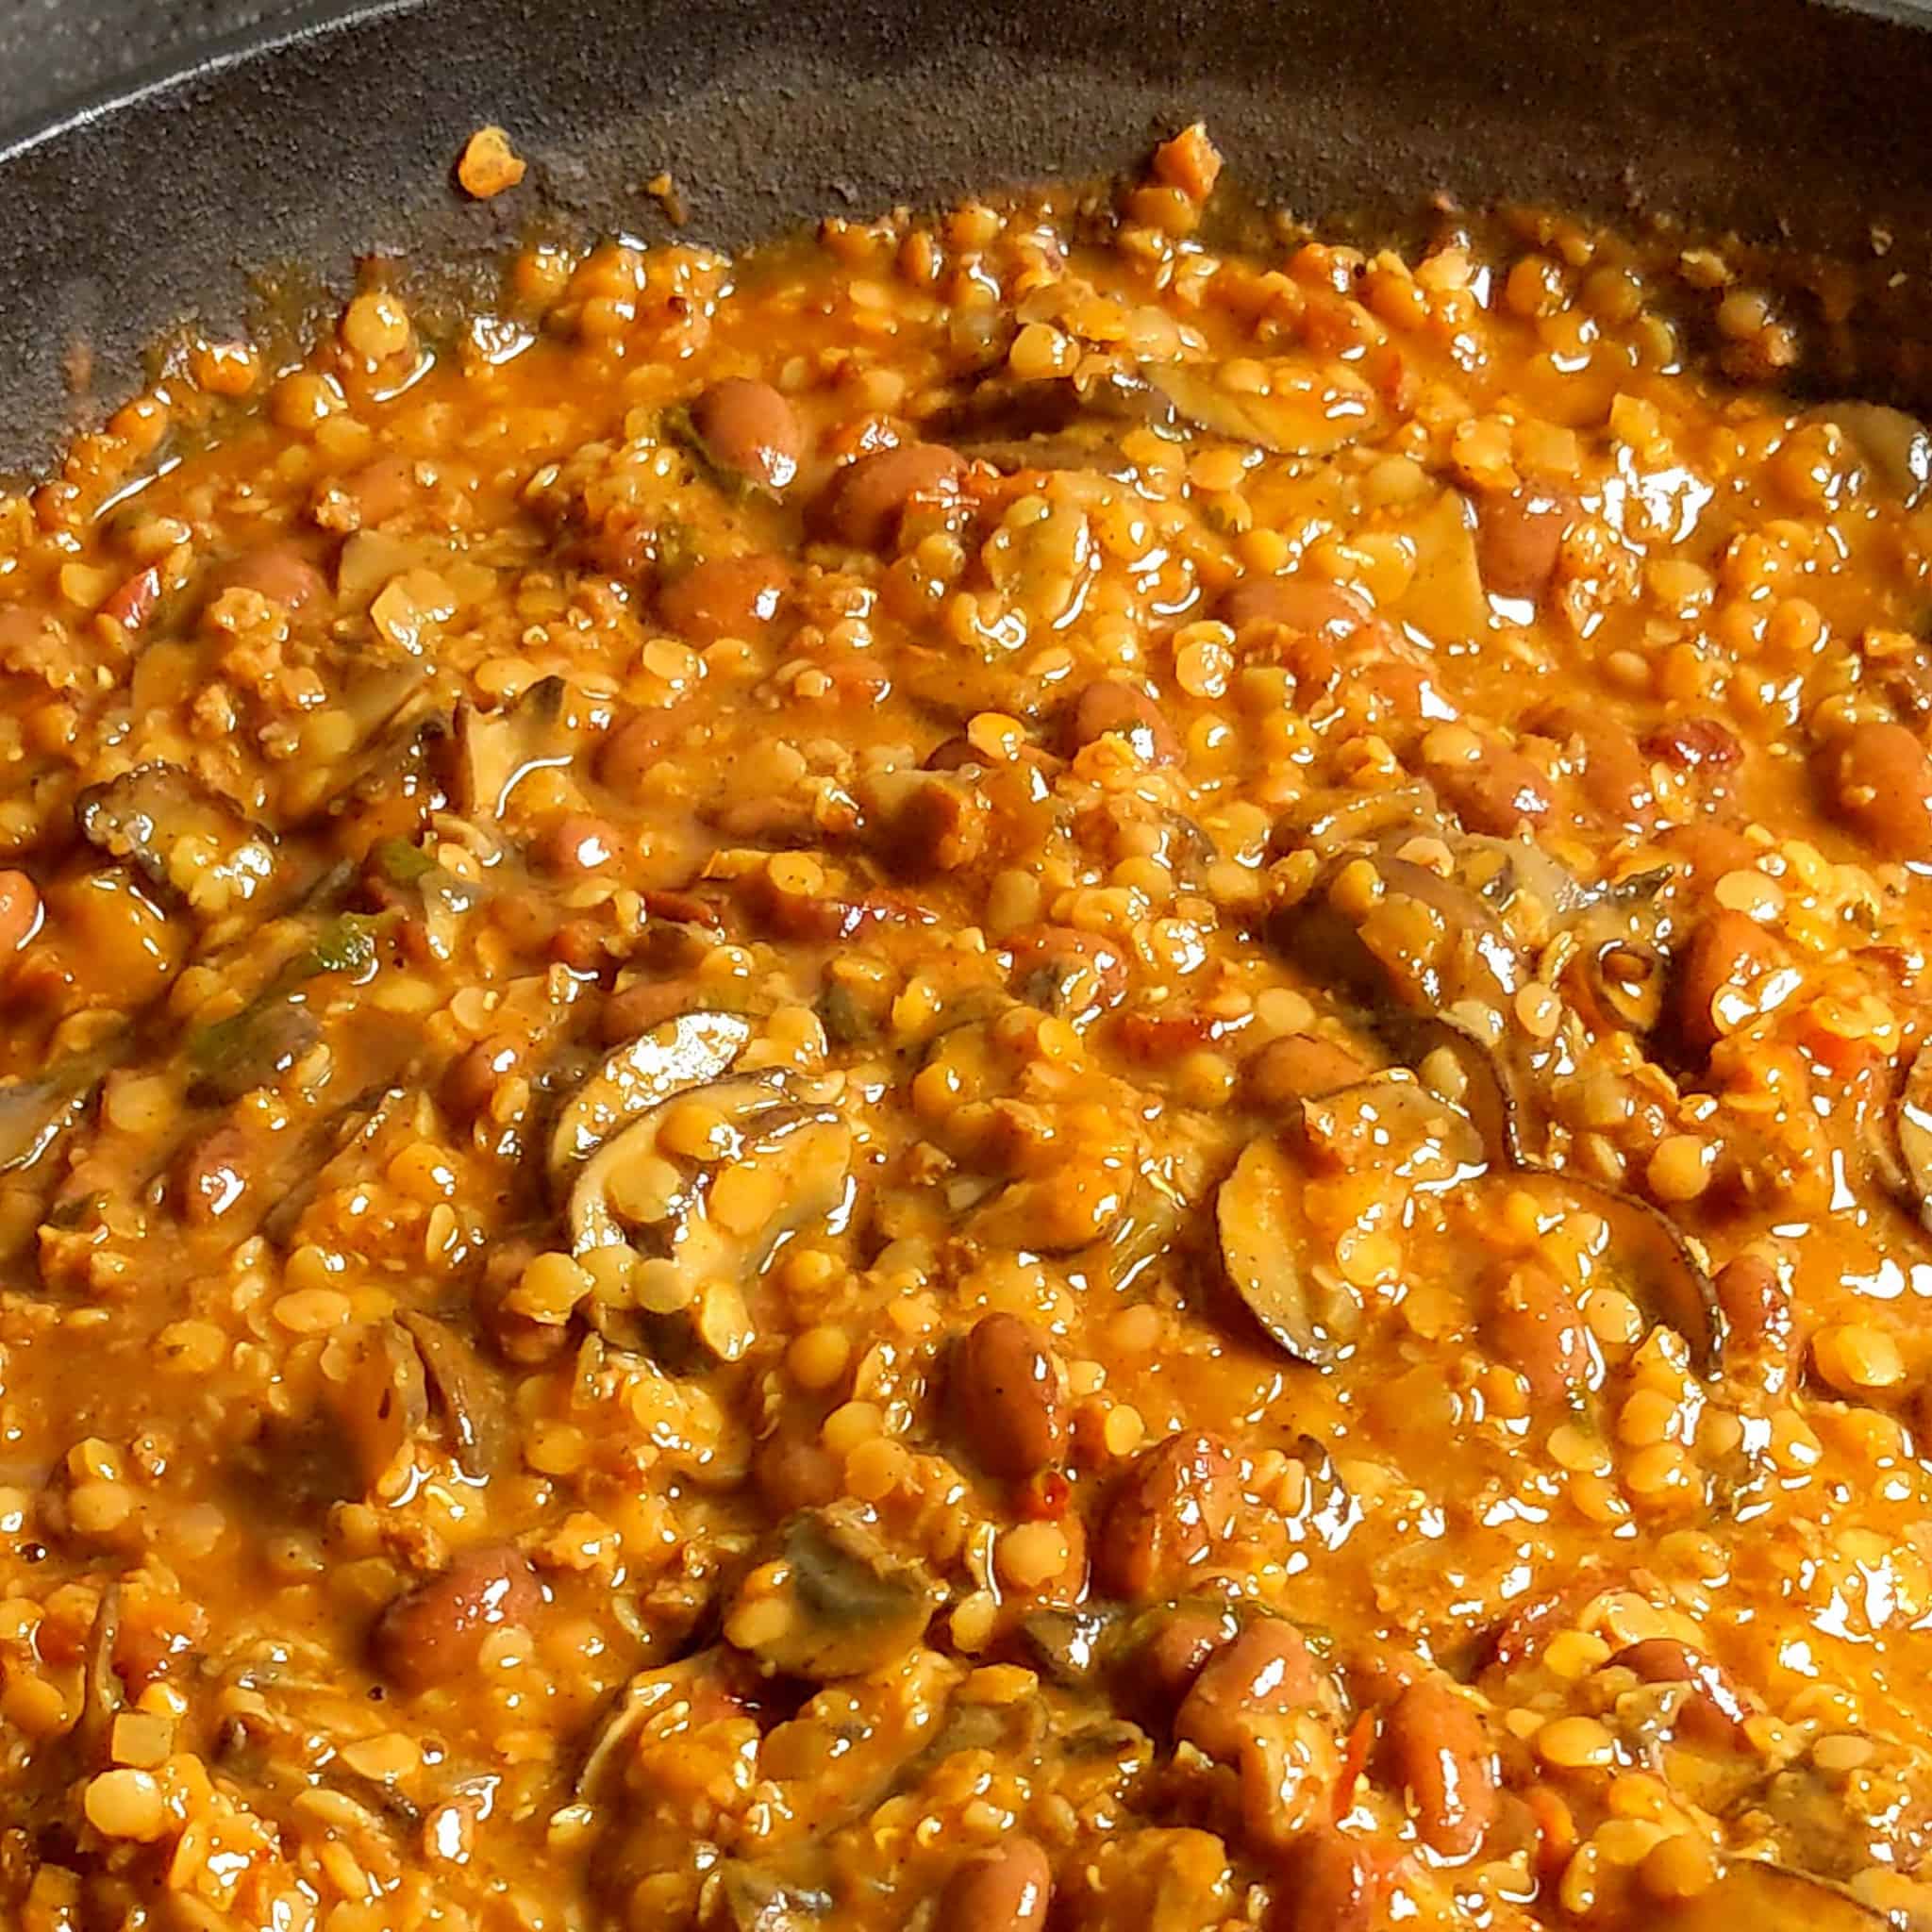 split red lentils, pinto beans, mushrooms and vegetables simmering in vegetable broth for the mushroom lentil bean chili